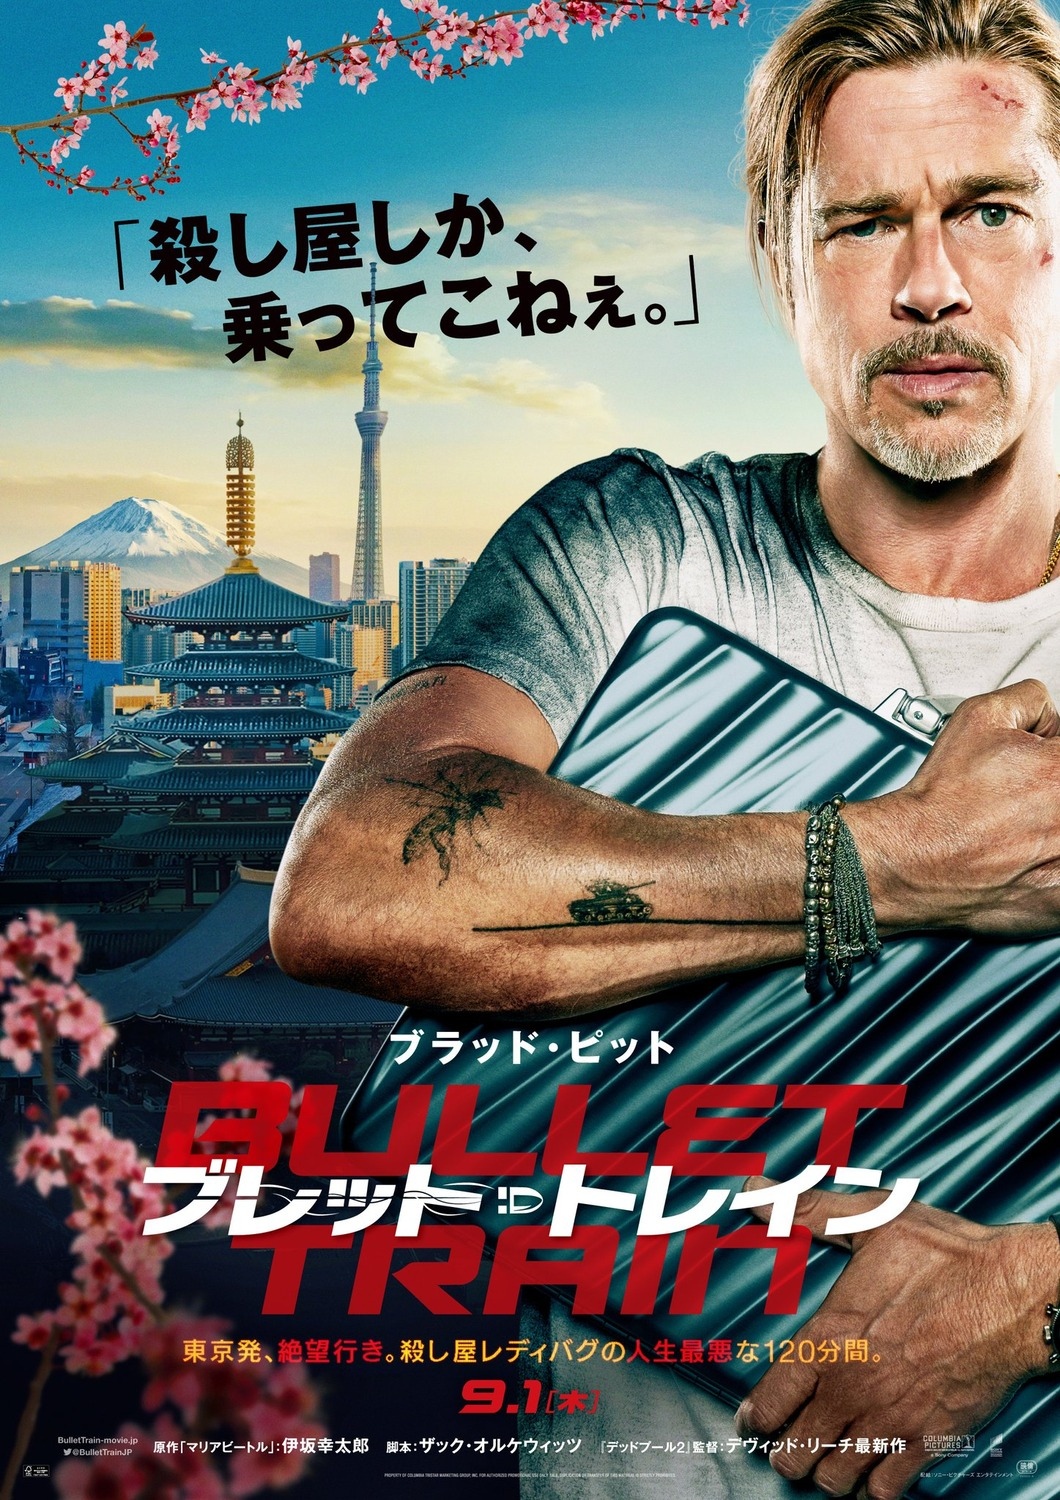 Брэд Питт и сакура на японском постере экшена "Быстрее пули"